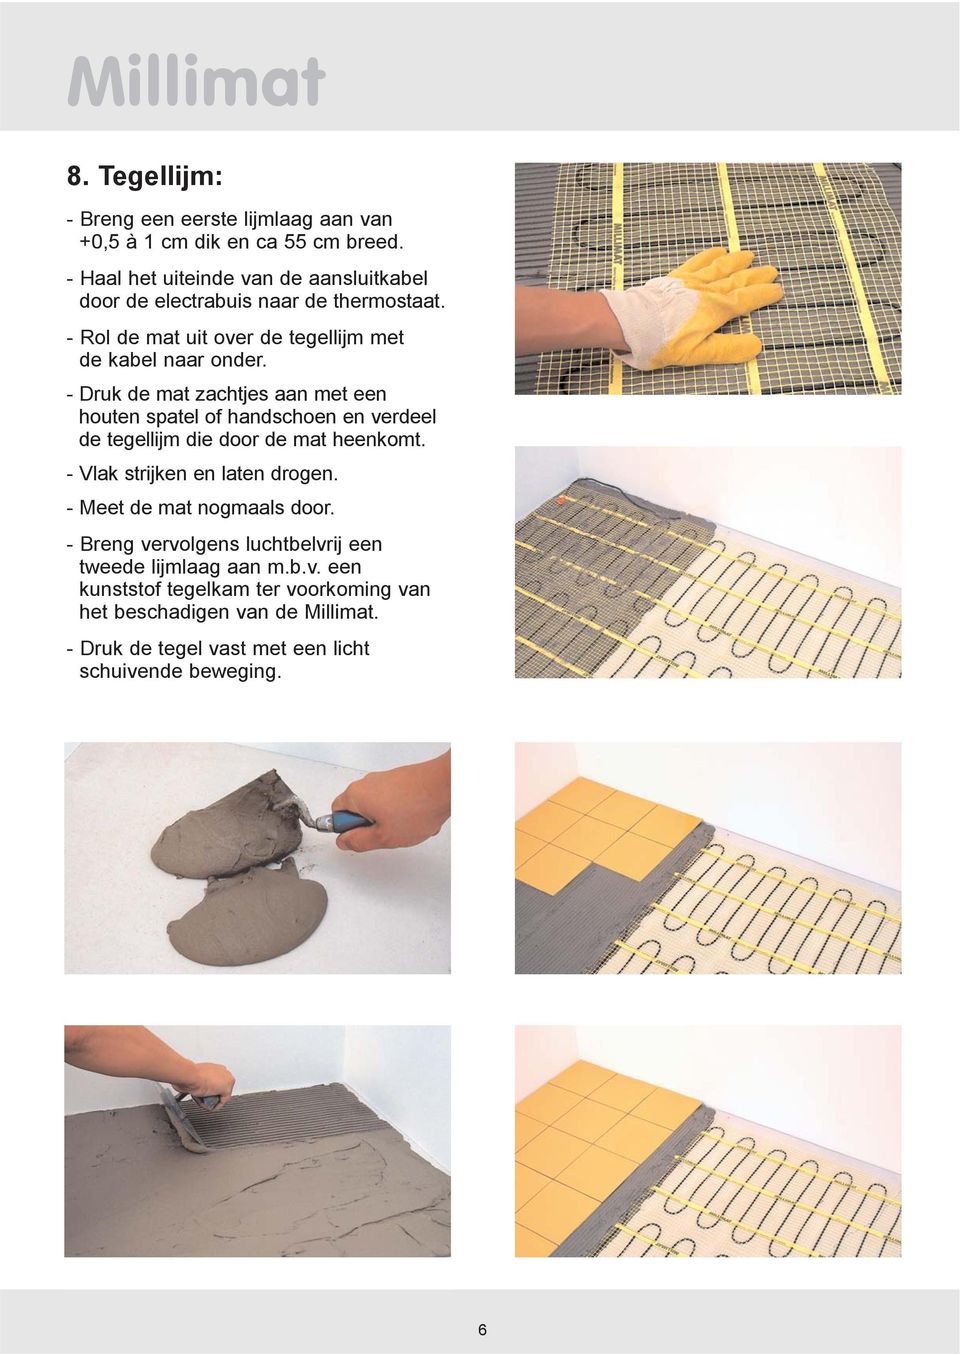 - Druk de mat zachtjes aan met een houten spatel of handschoen en verdeel de tegellijm die door de mat heenkomt. - Vlak strijken en laten drogen.